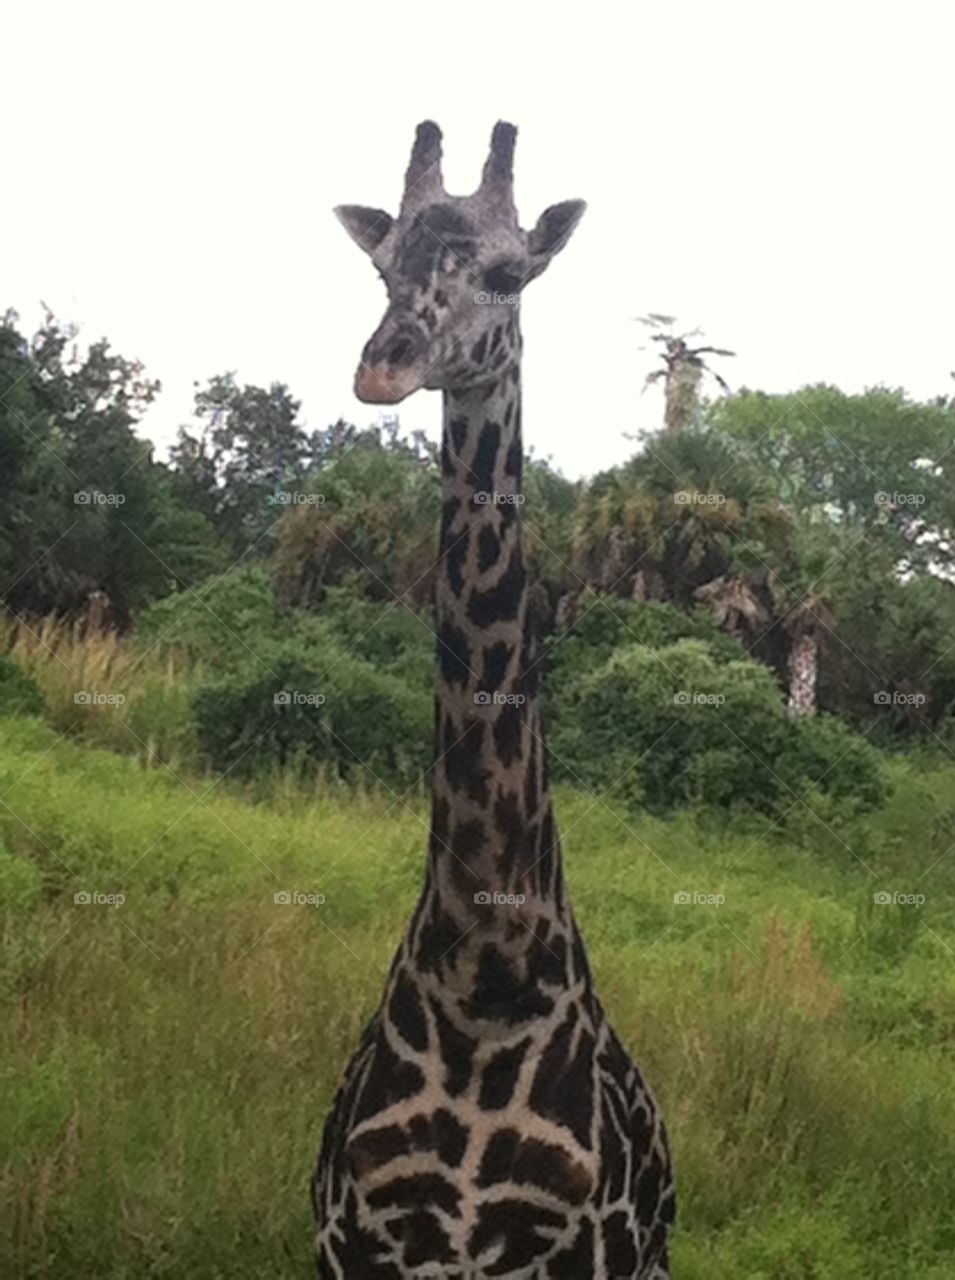 Young Giraffe. Walt Disney World safari "Giraffic Jam"